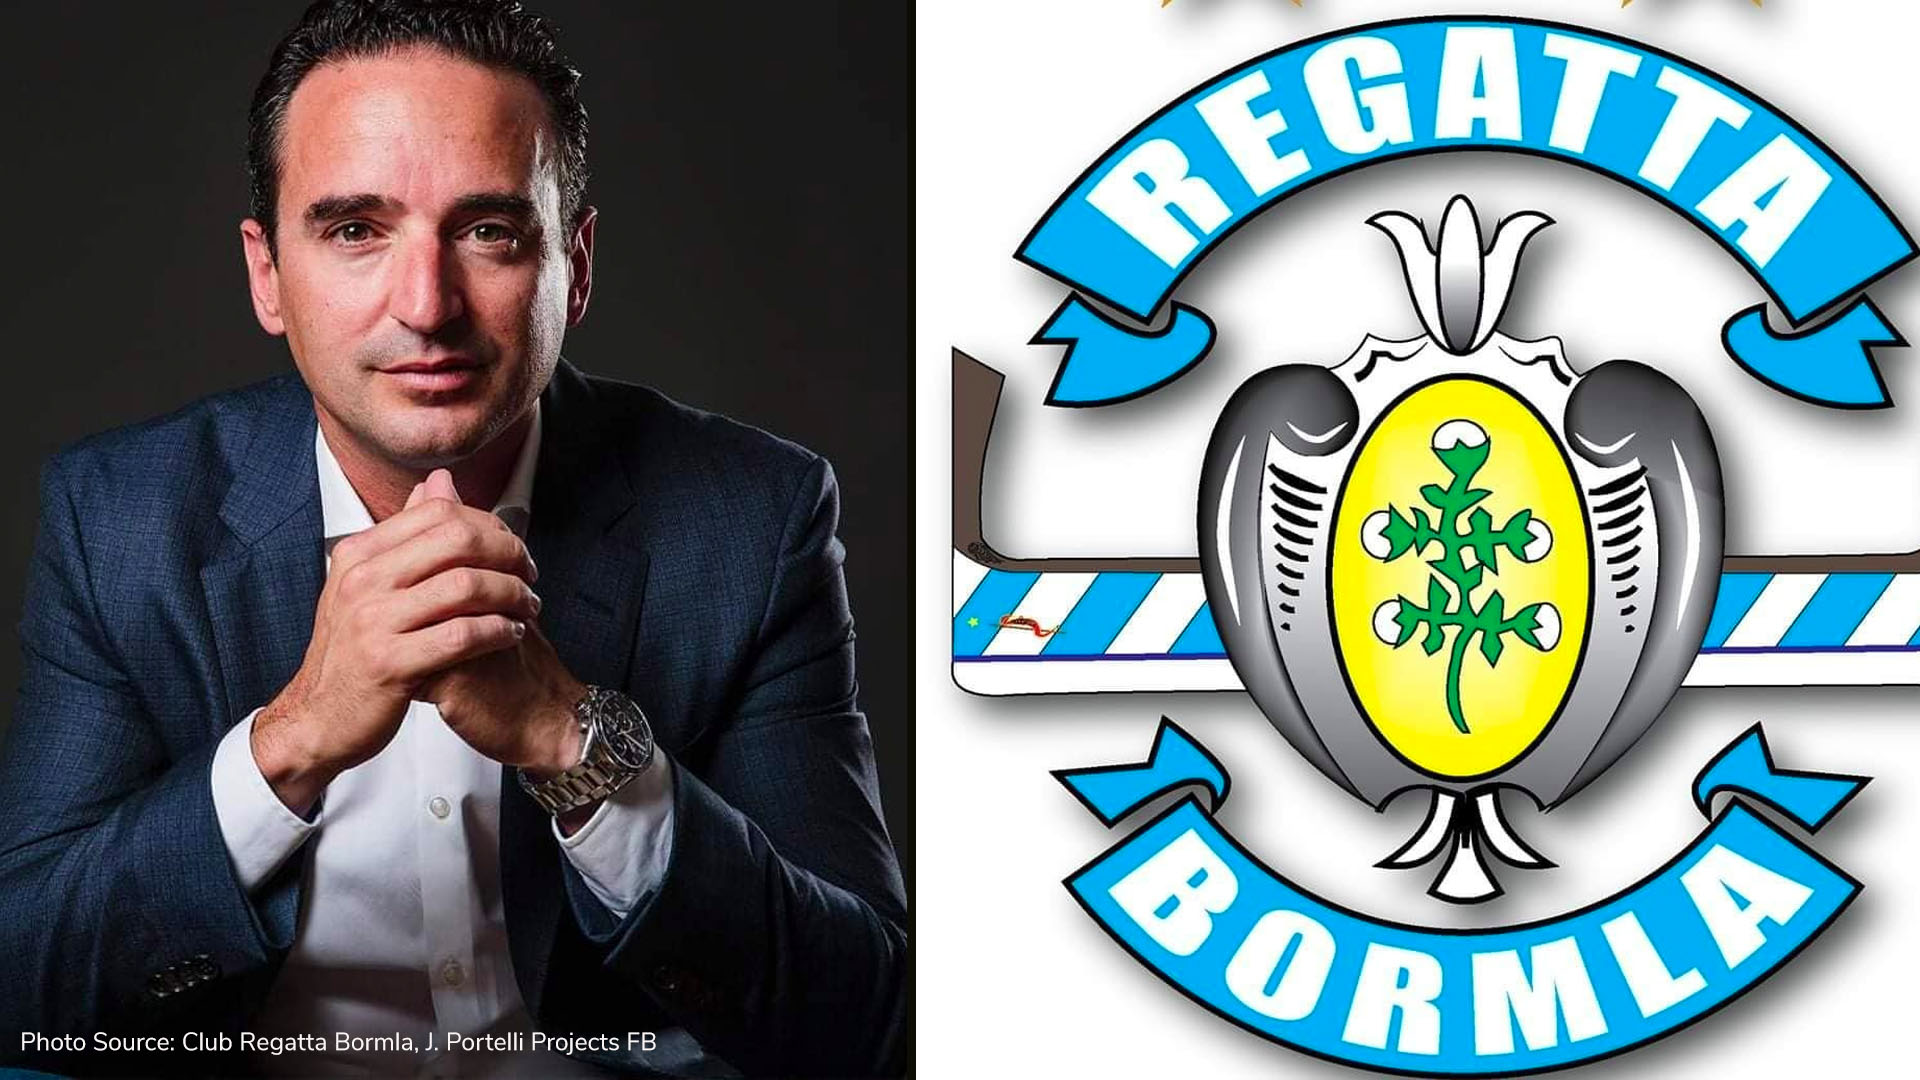 J. Portelli Projects to sponsor Club Regatta Bormla